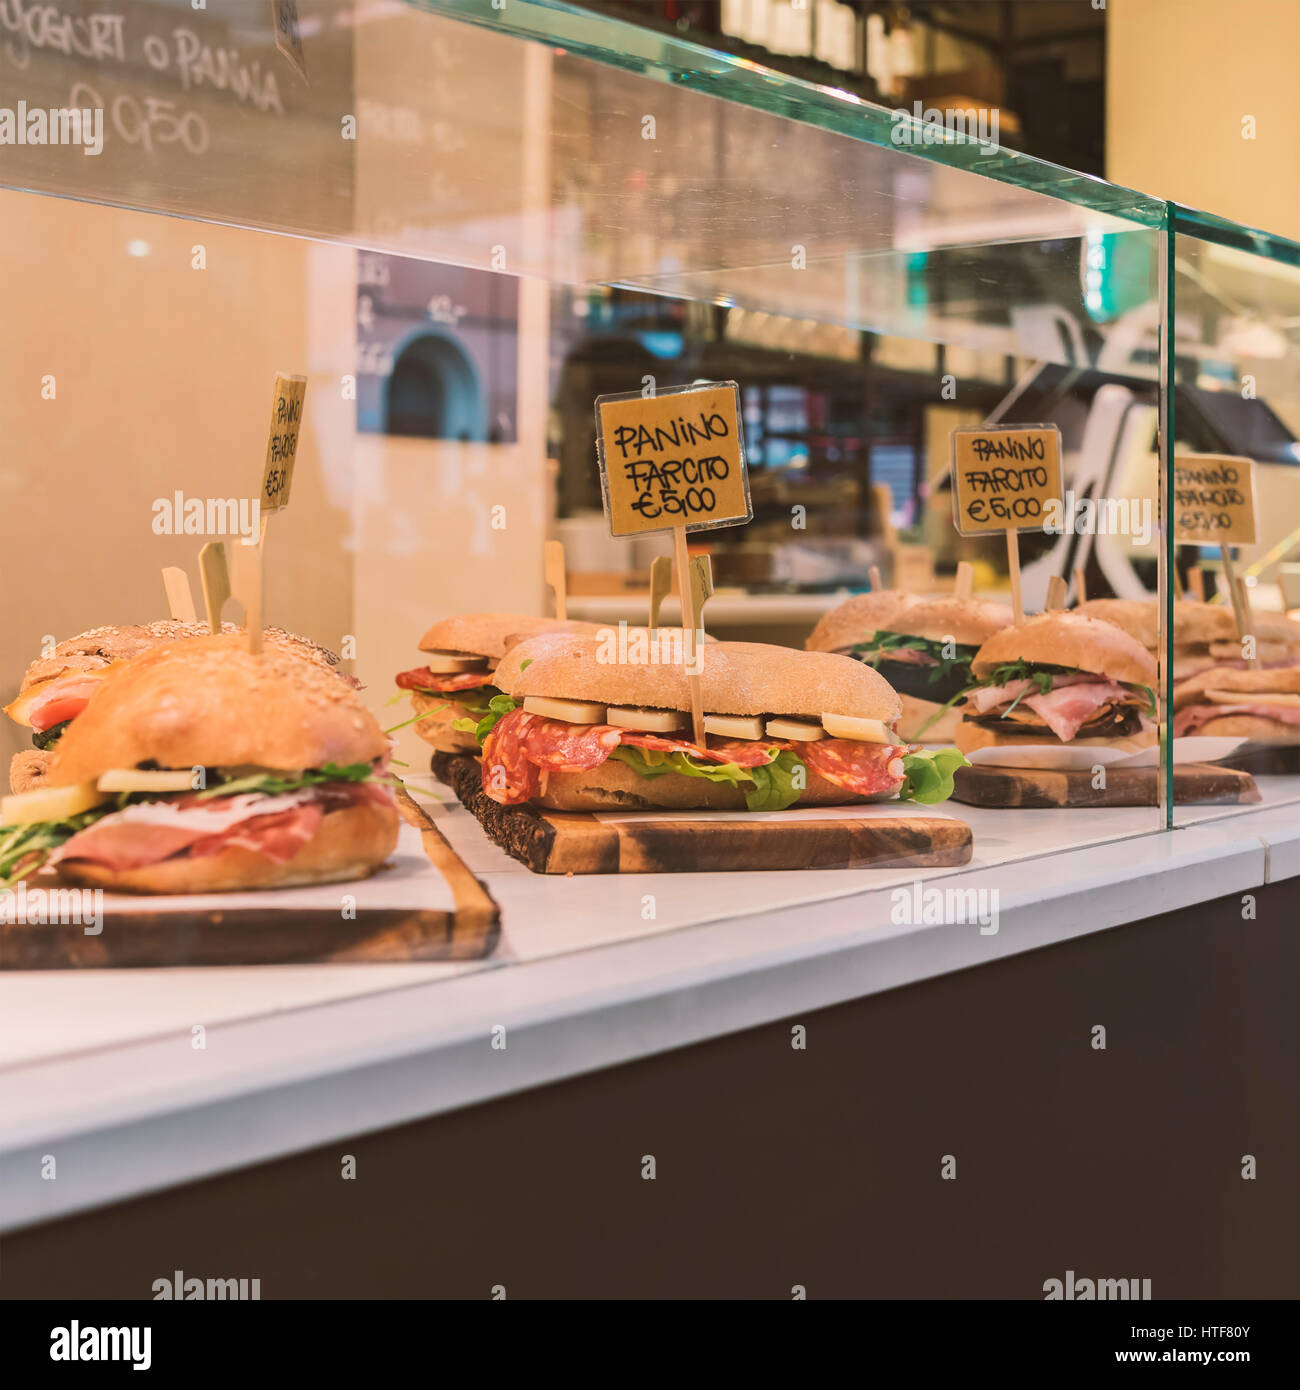 https://c8.alamy.com/comp/HTF80Y/image-of-fresh-sandwiches-in-italian-deli-HTF80Y.jpg